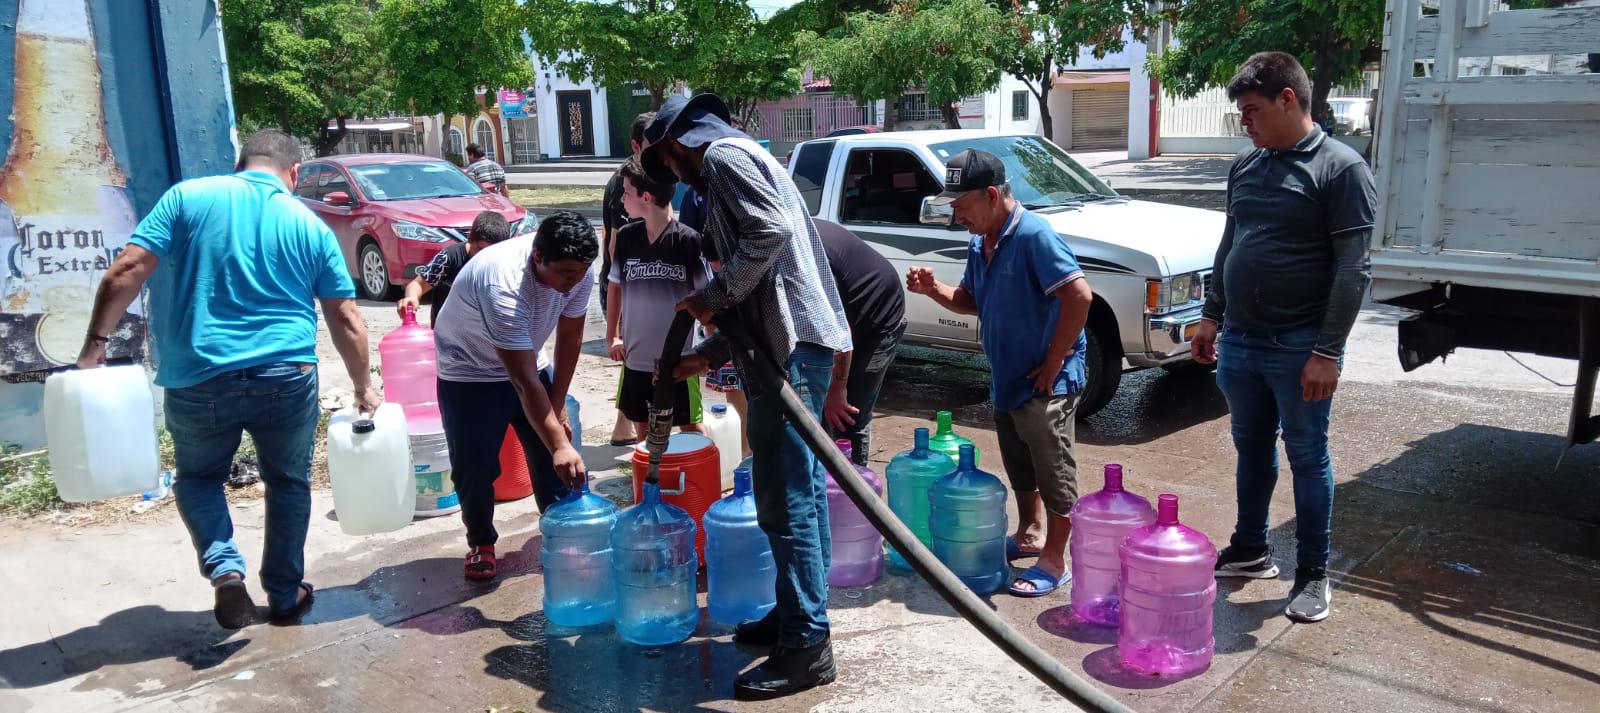 $!En medio de la urgencia y bajo el sol, aguardan por recibir agua en pipas en Culiacán